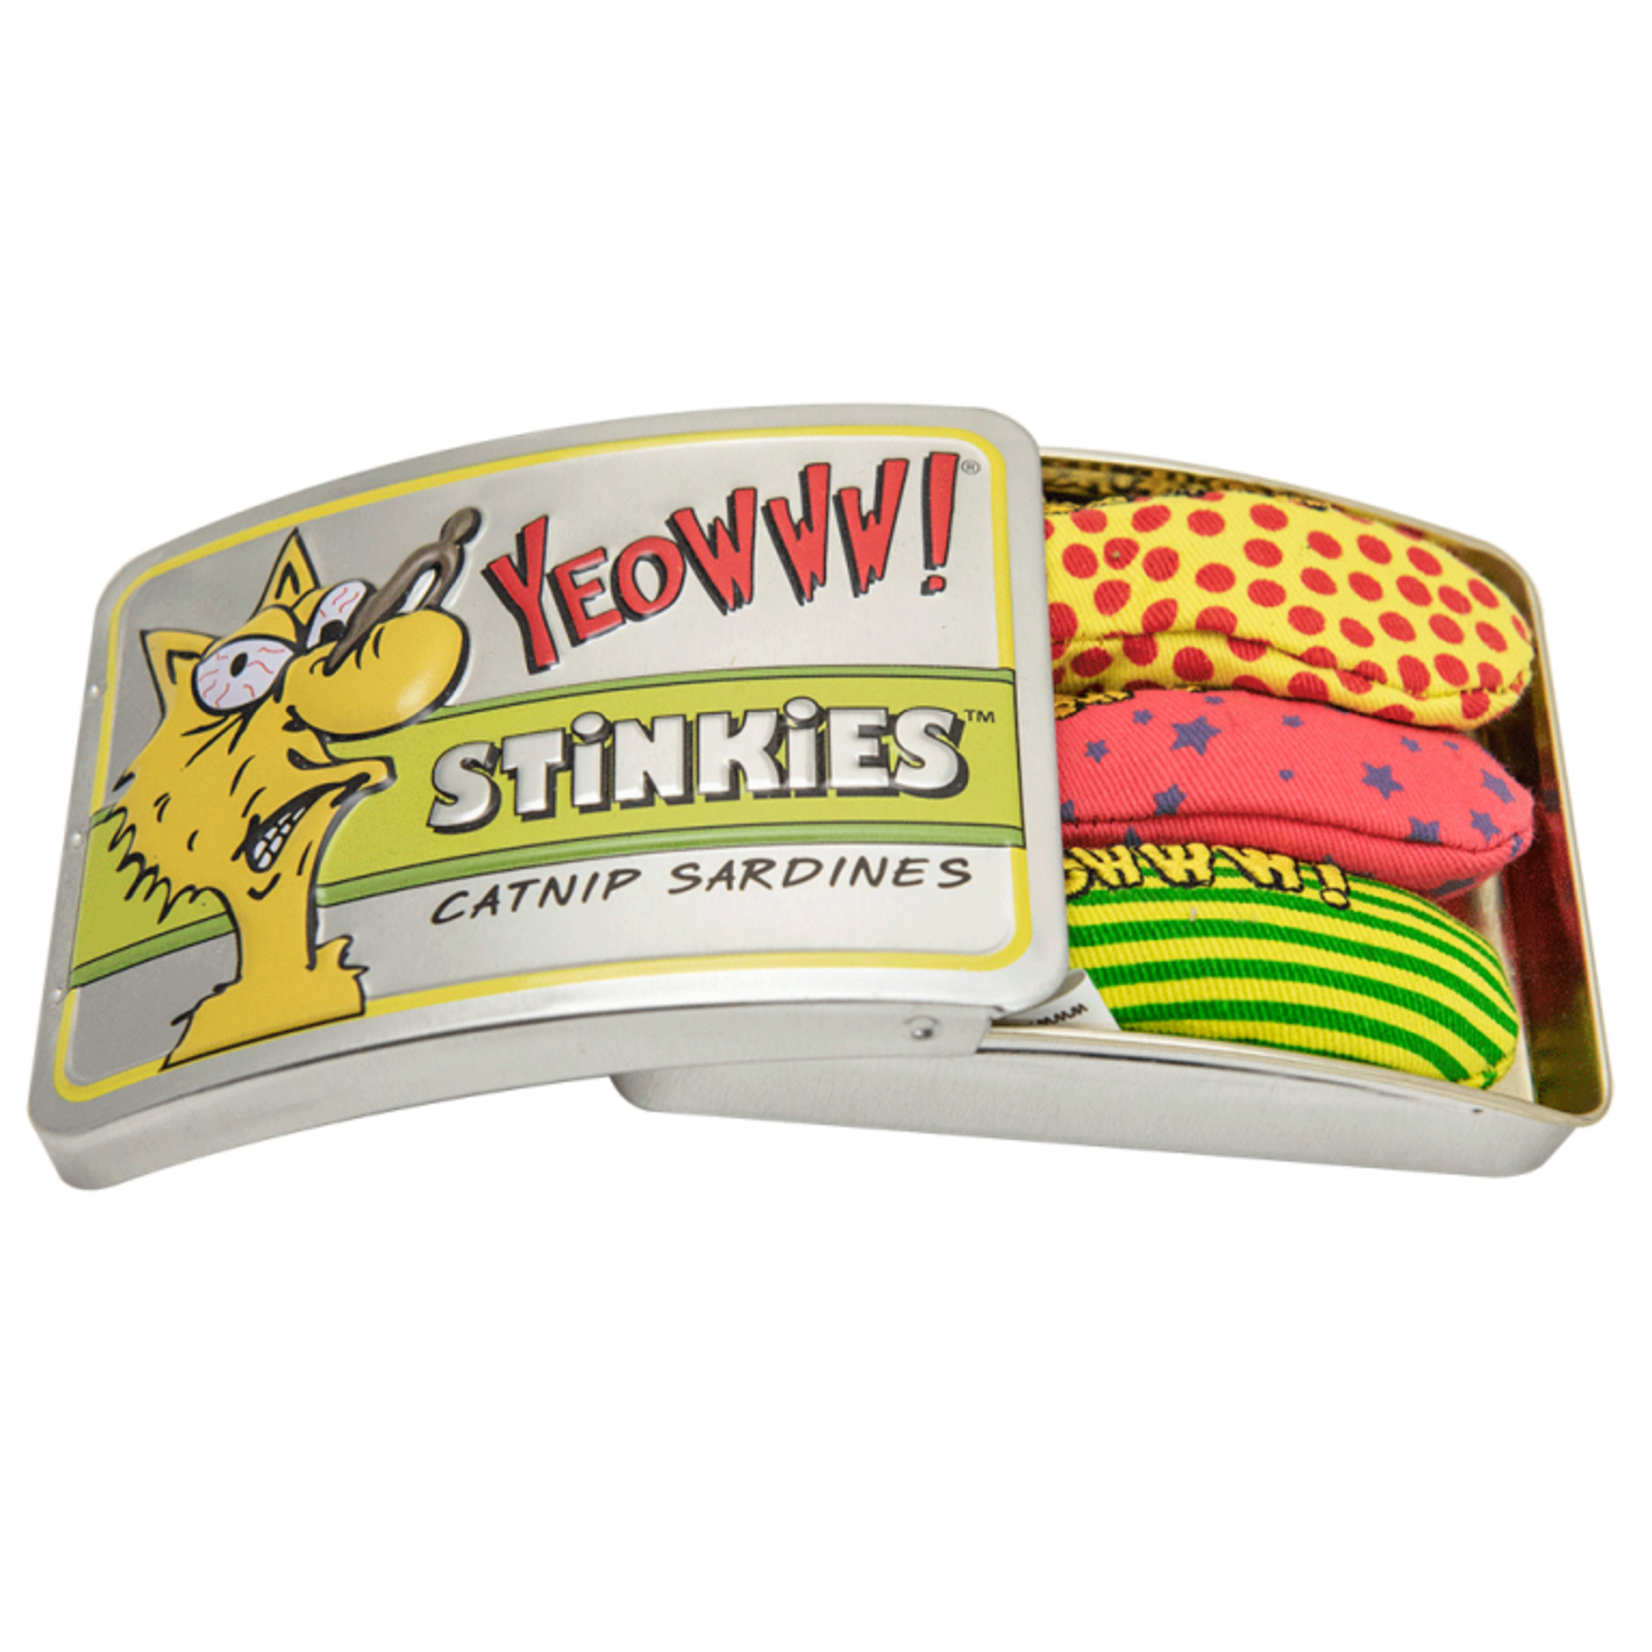 Yeowww! Yeowww! Stinkies Tin Catnip Sardines Toys